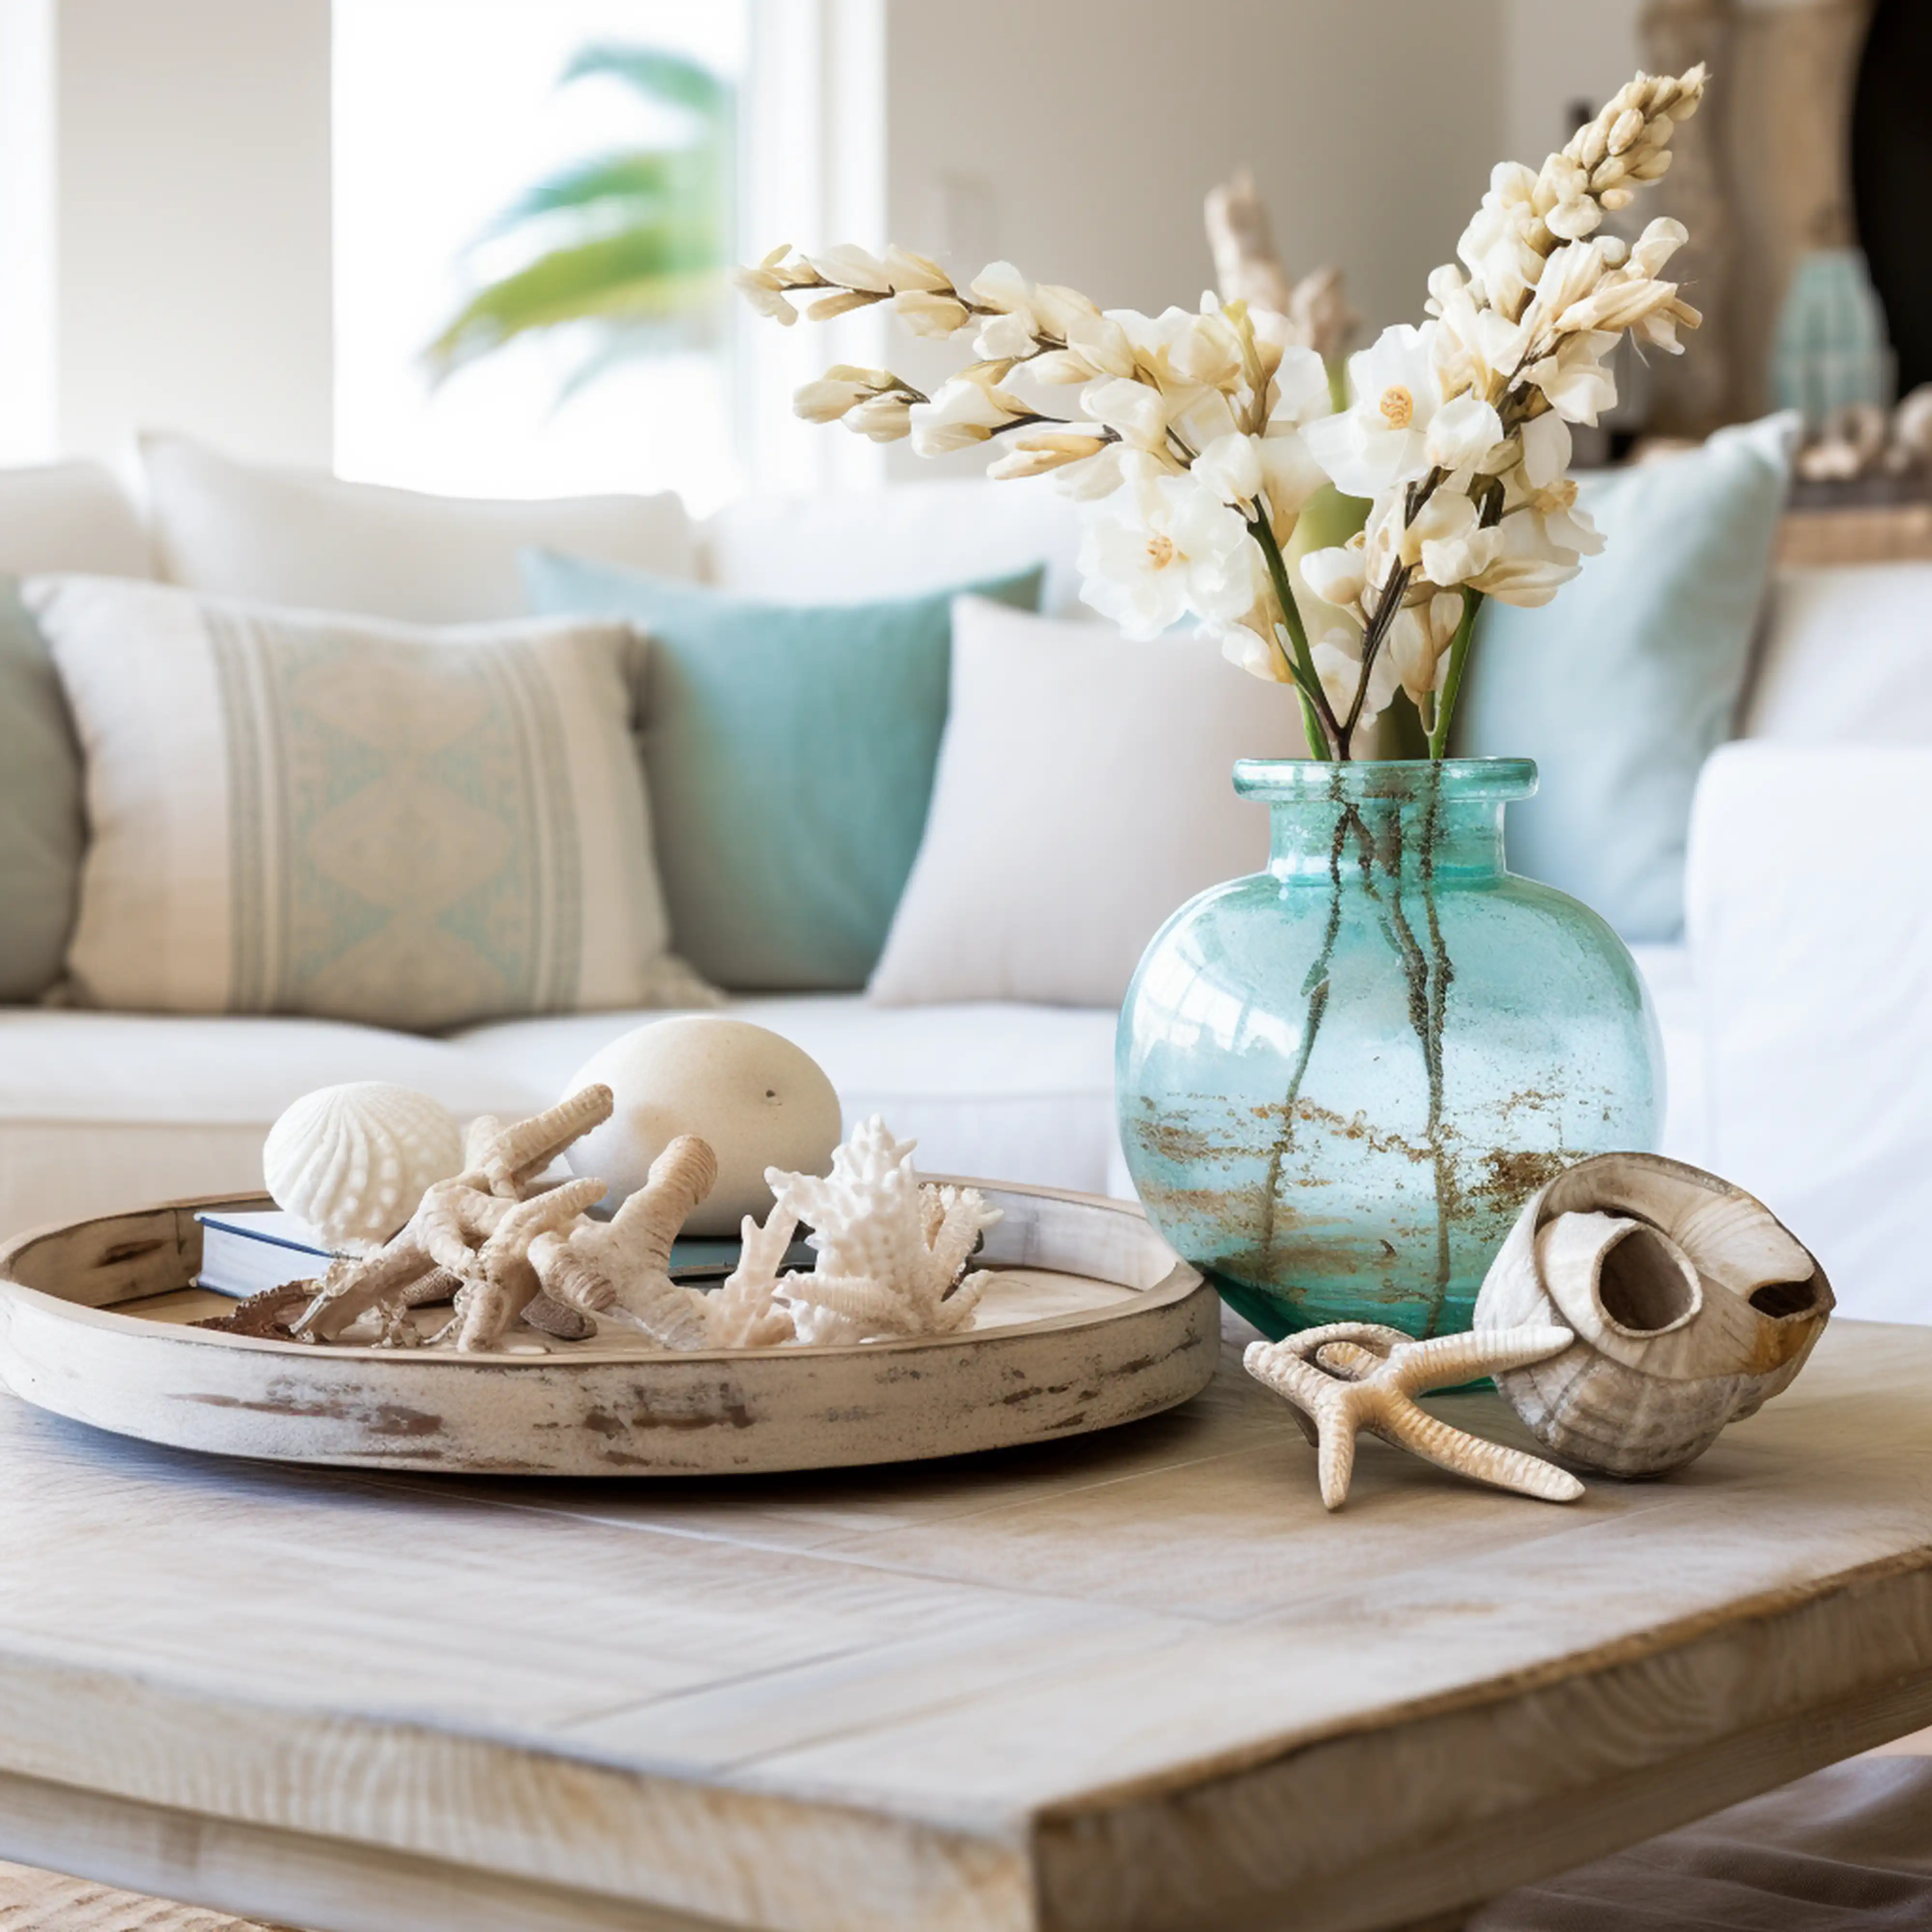 Salon de style côtier avec un vase turquoise, des fleurs blanches et des coquillages sur un plateau en bois, intérieur signé Sarah Brown Design